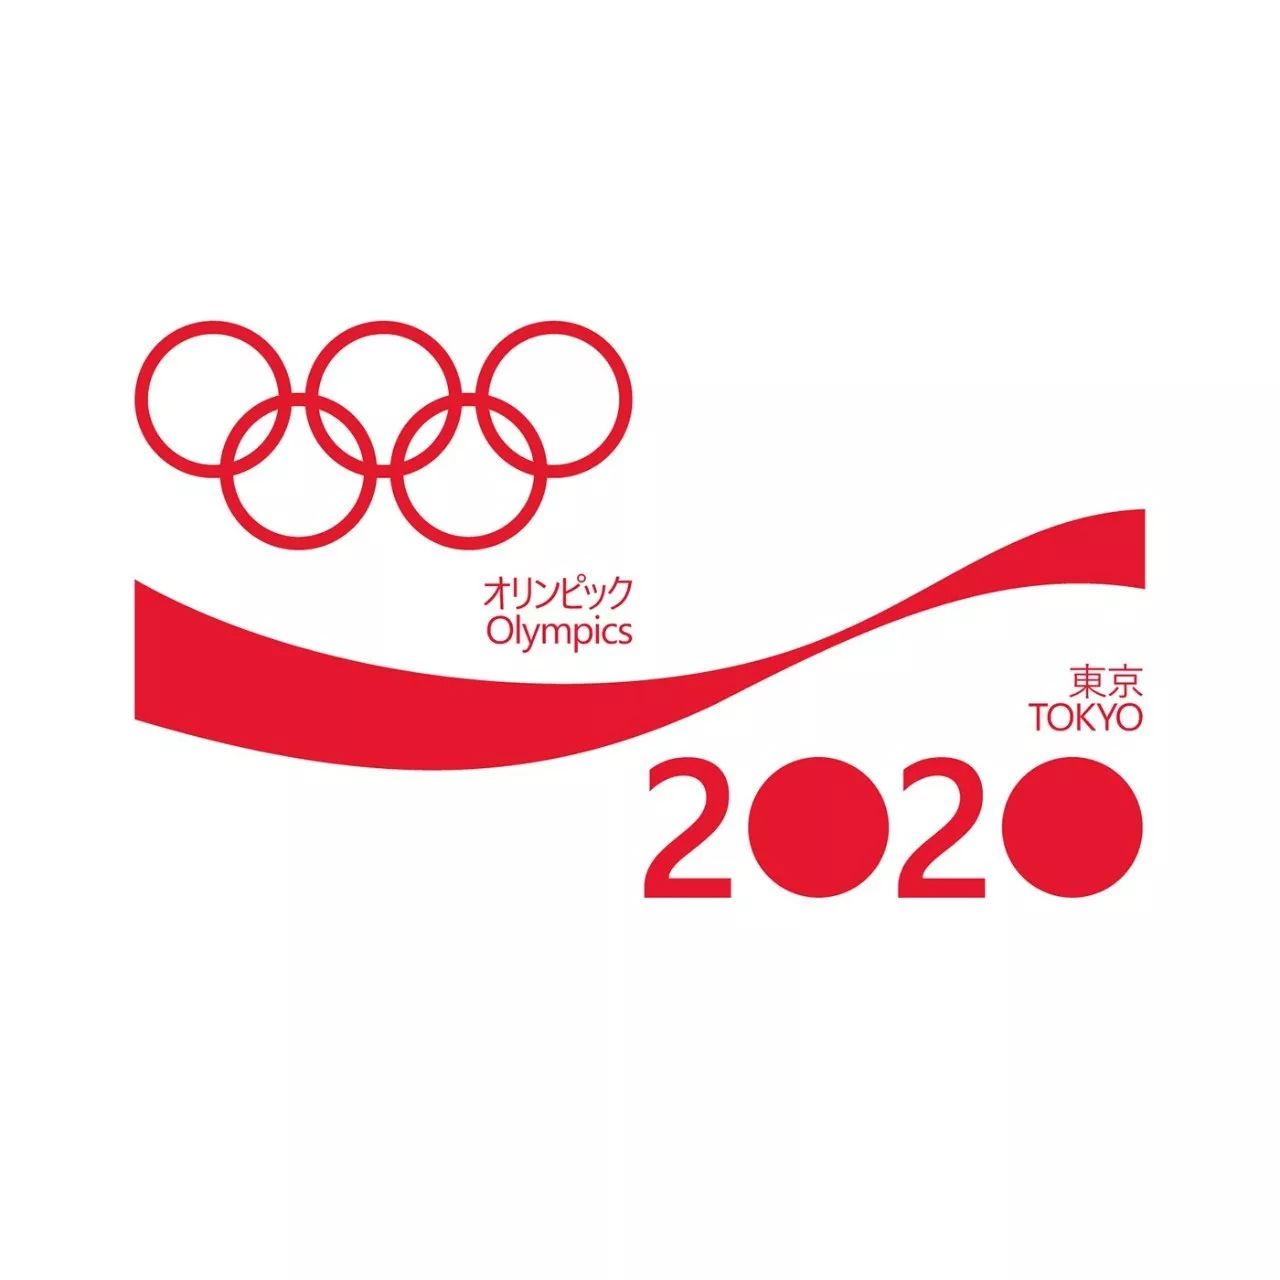 为了东京奥运会,可口可乐的这些设计亮了!